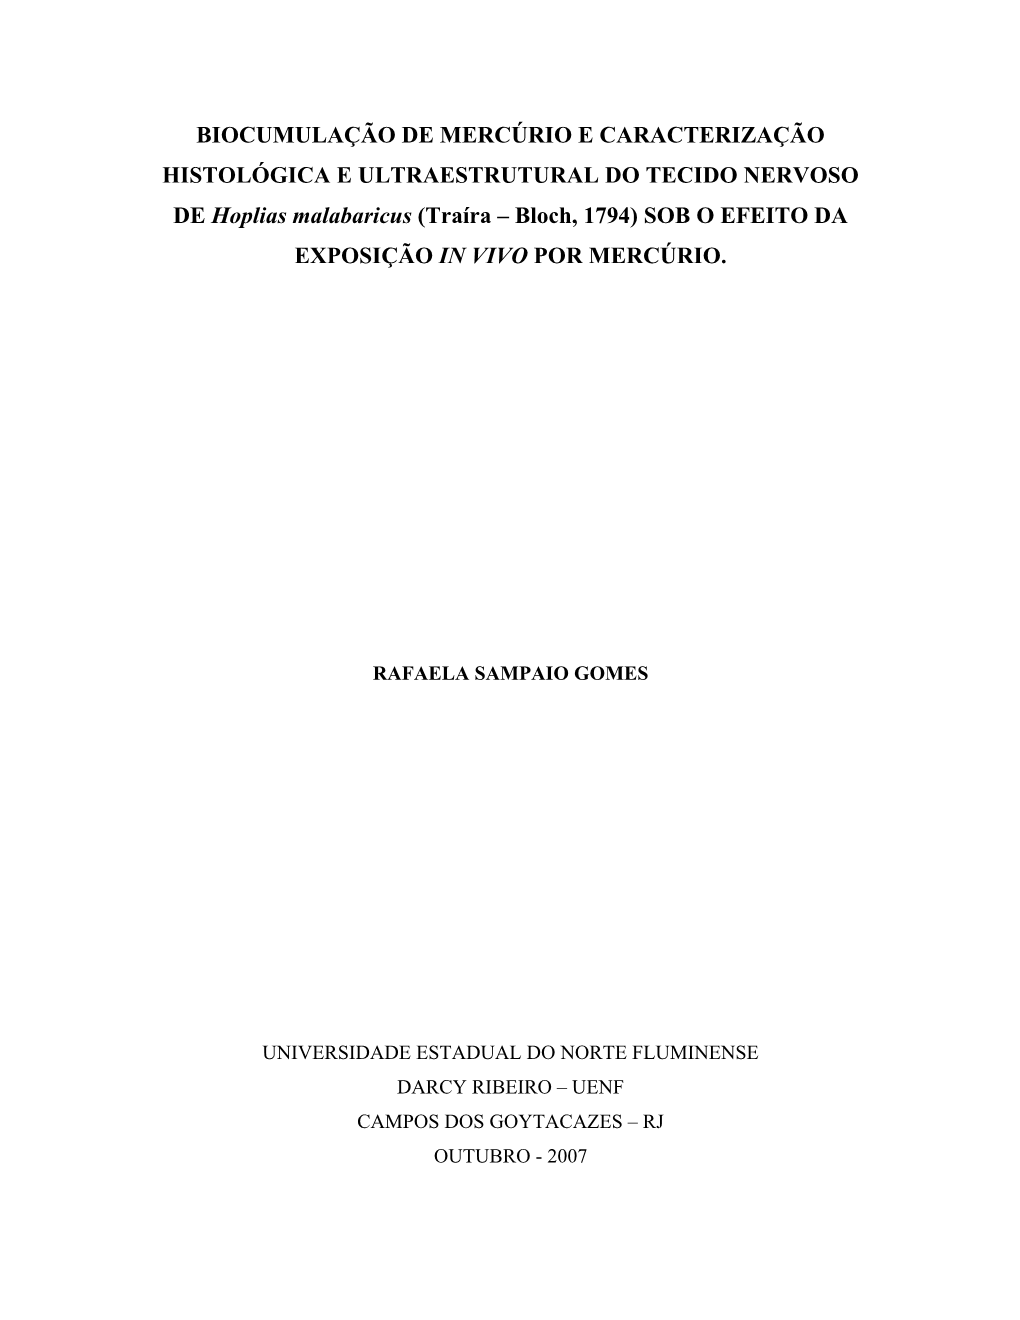 CARACTERIZAÇÃO HISTOLÓGICA E ULTRAESTRUTURAL DO TECIDO NERVOSO DE Hoplias Malabaricus (Traíra – Bloch, 1794) SOB O EFEITO DA EXPOSIÇÃO in VIVO POR MERCÚRIO